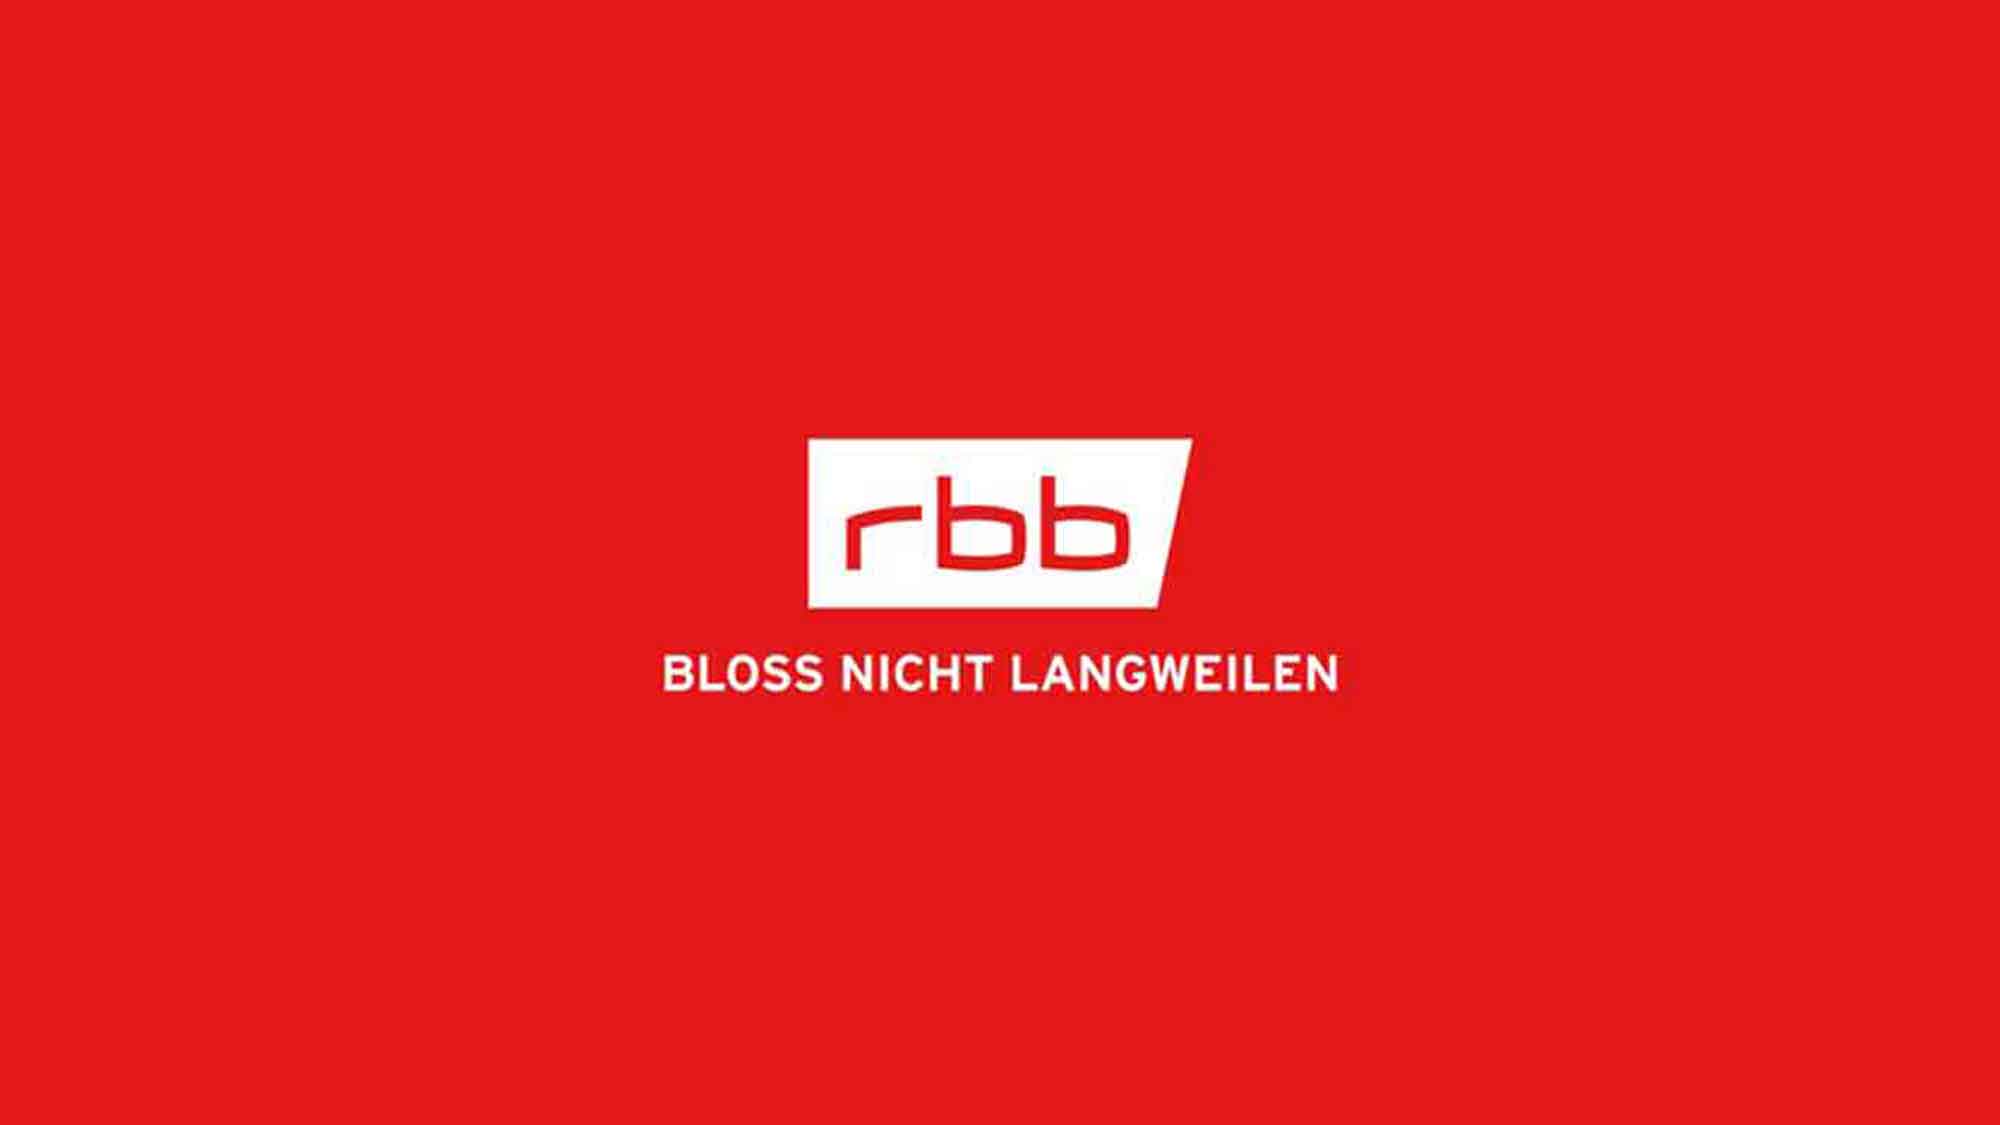 Rundfunk Berlin Brandenburg (RBB): Union Berlin – Entscheidung zum Investoren war dringend notwendig